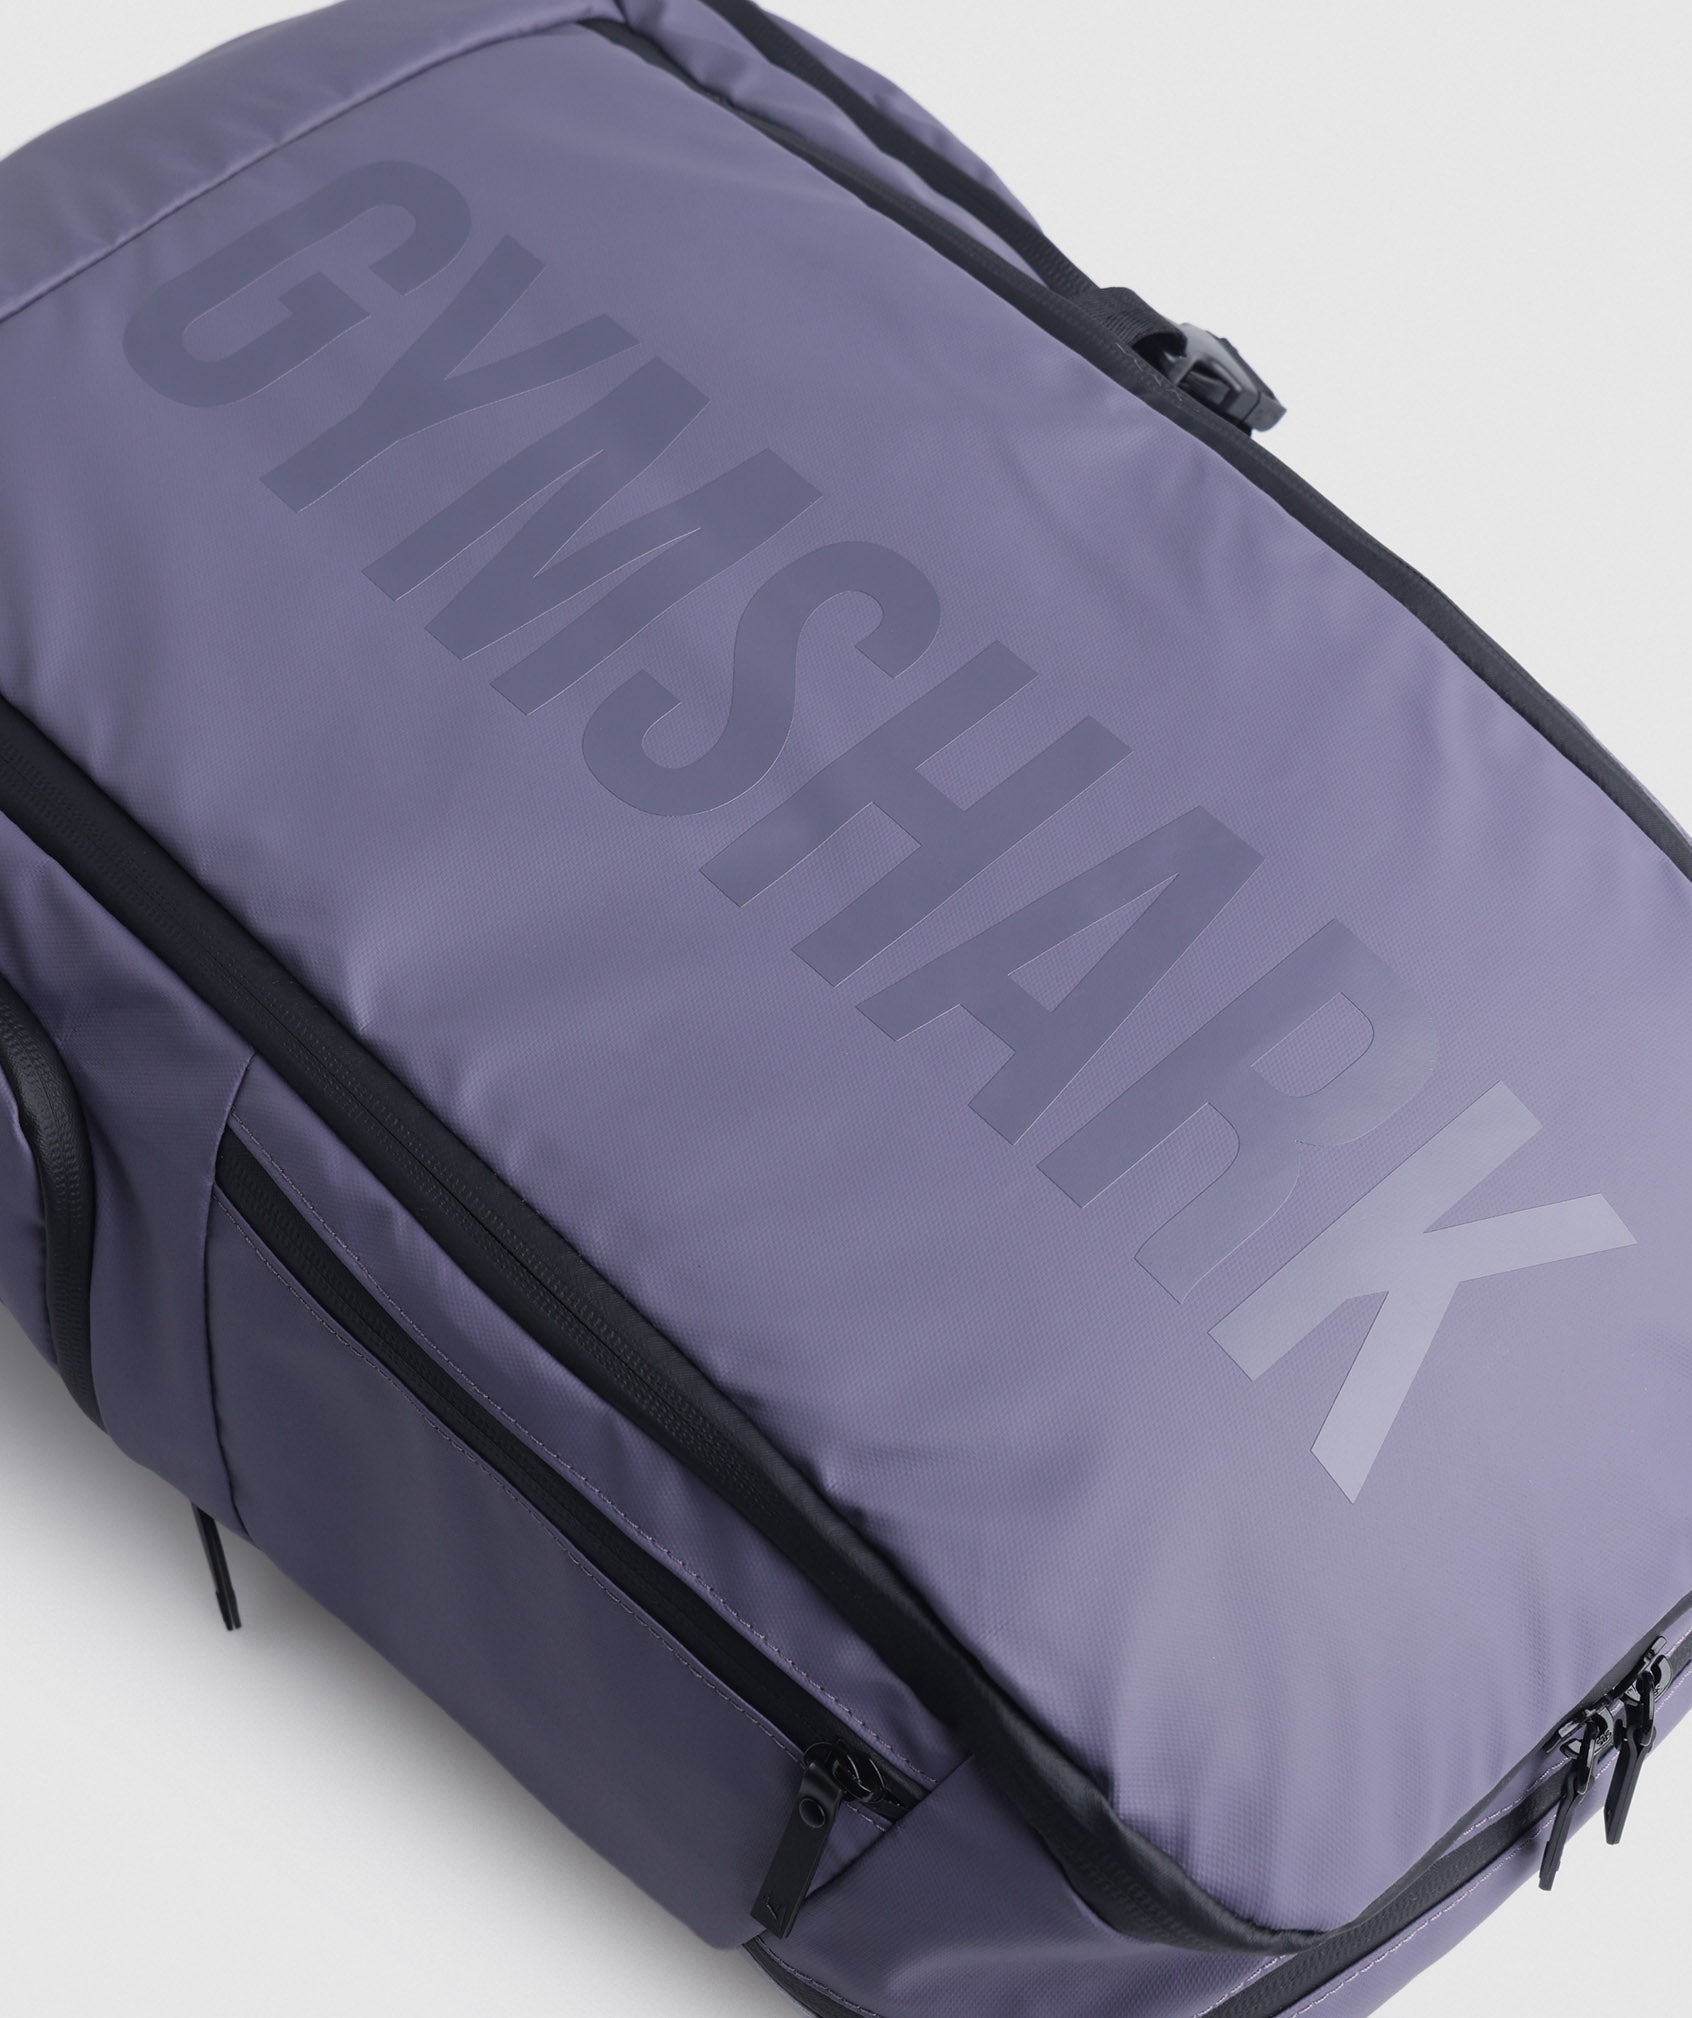 X-Series 0.3 Backpack in Mercury Purple